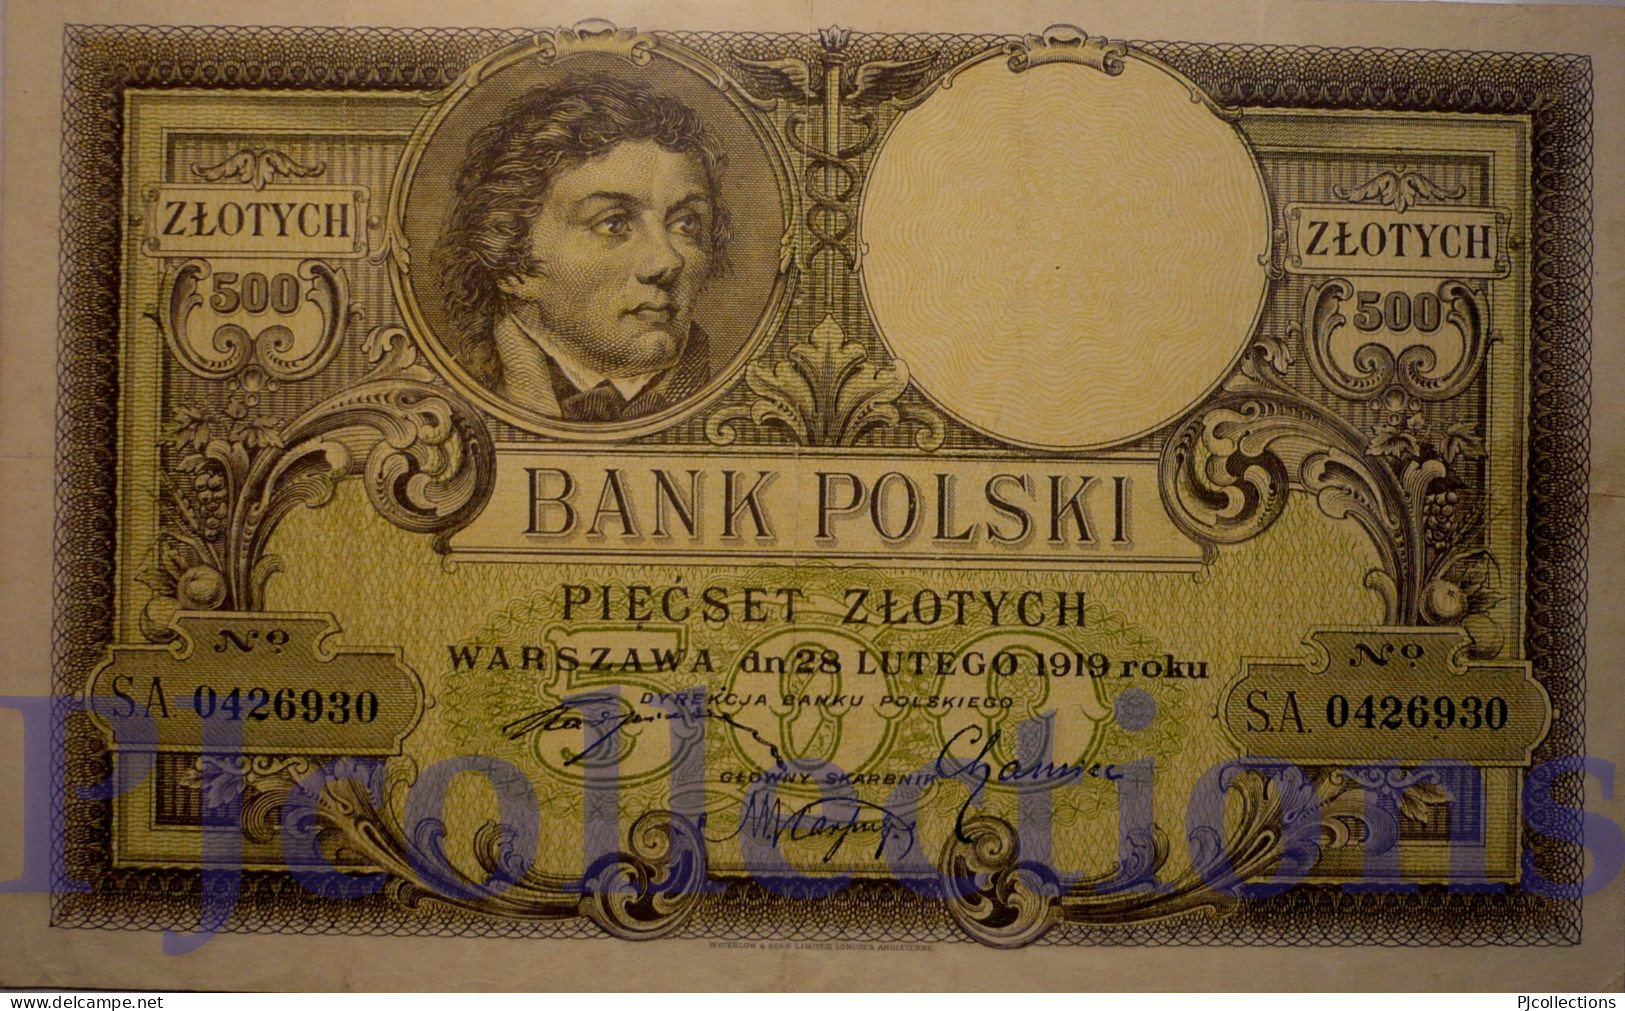 POLONIA - POLAND 500 ZLOTYCH 1919 PICK 58 AXF - Poland